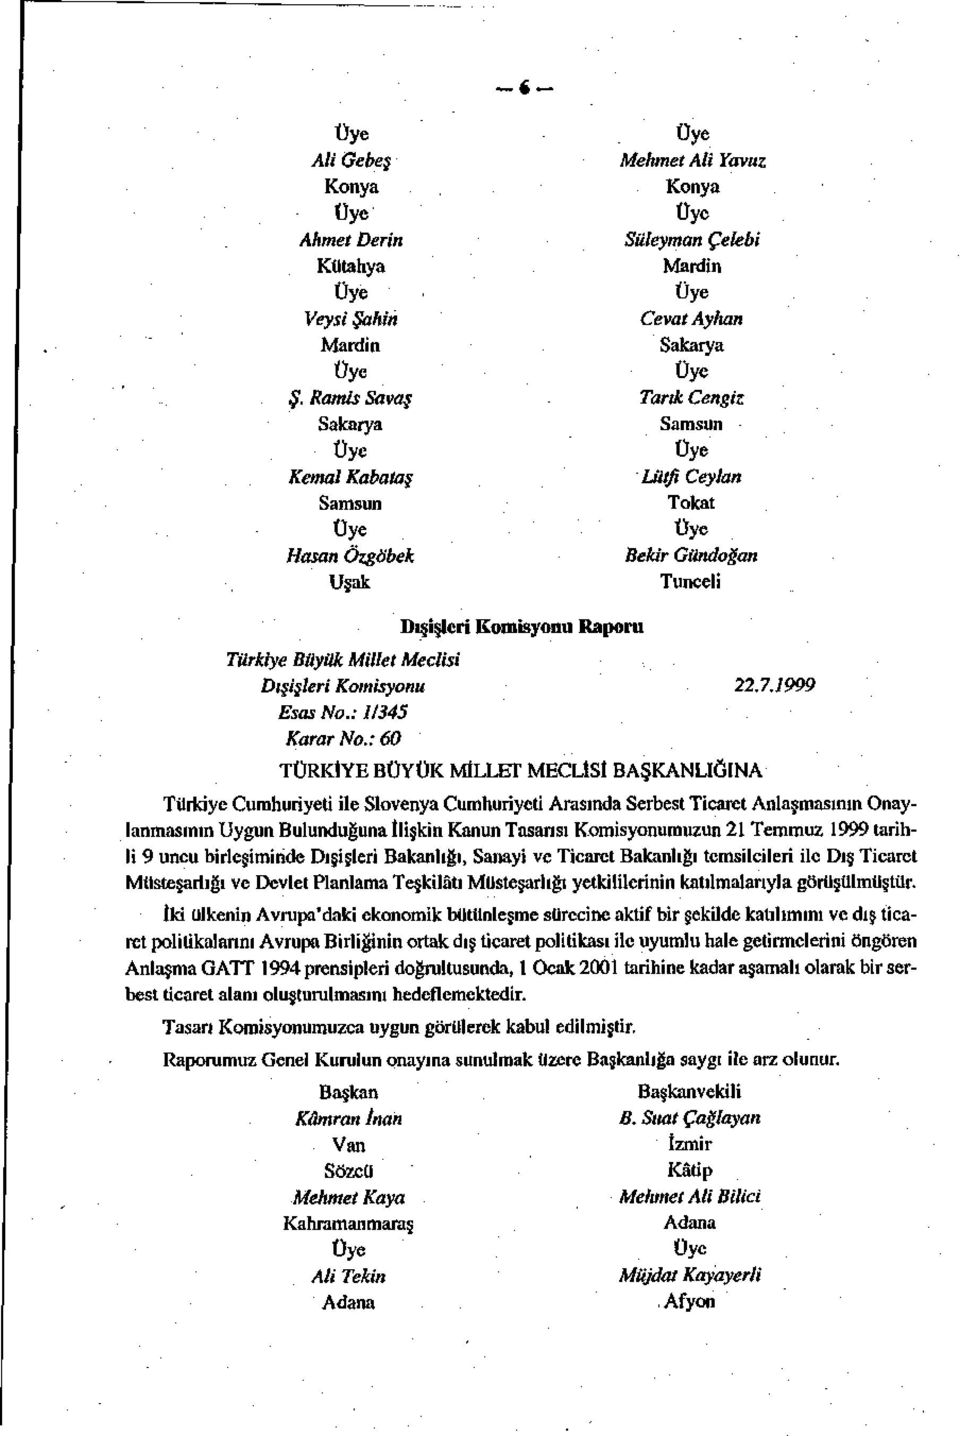 Bekir Gündoğan Tunceli Dışişleri Komisyonu Raporu Türkiye Büyük Millet Meclisi Dışişleri Komisyonu 22.7.1999 Esas No.: 1/345 Karar No.